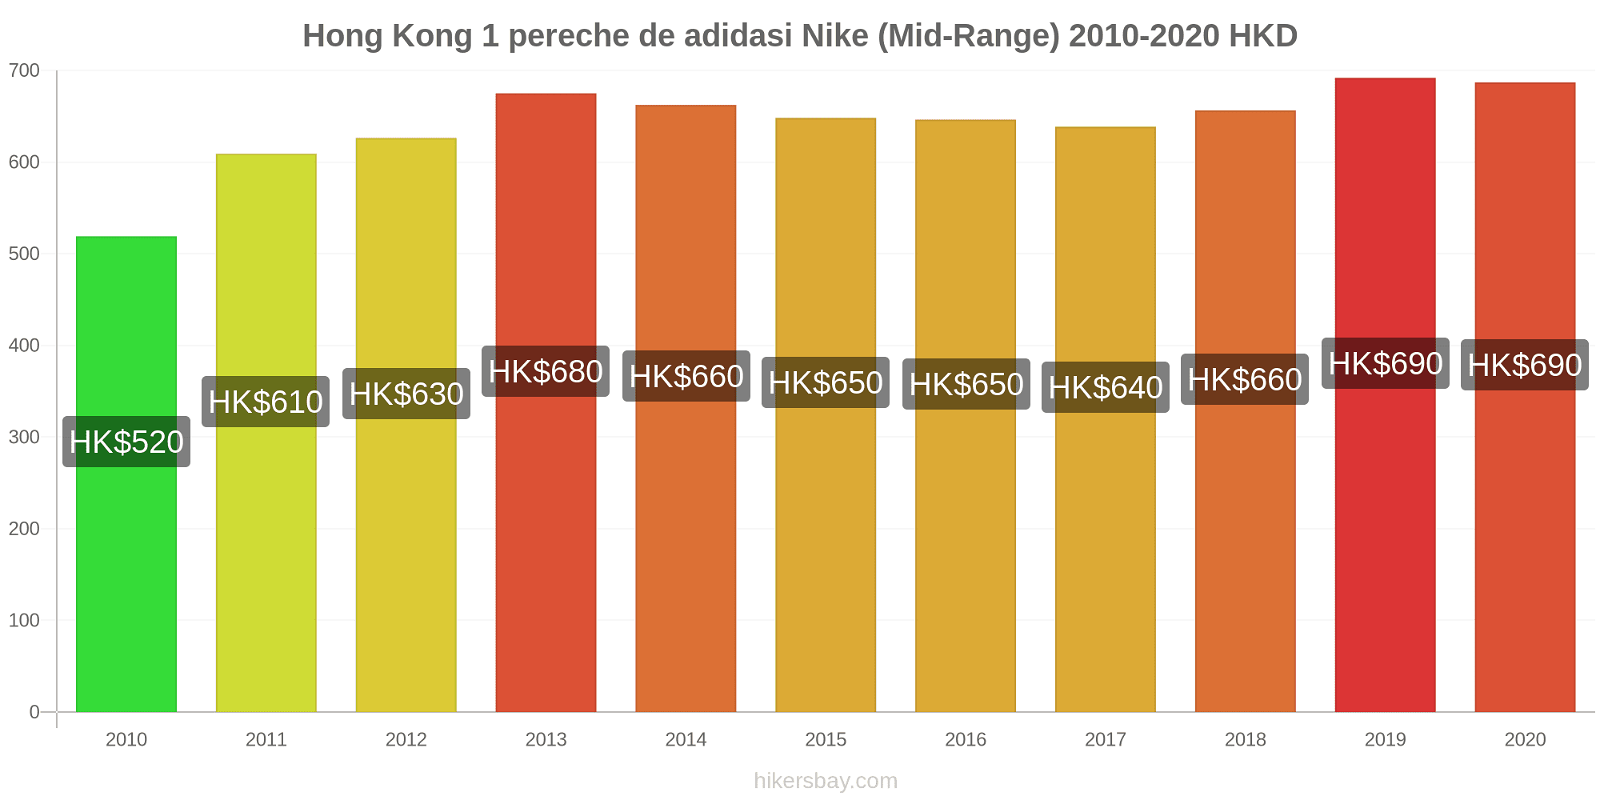 Hong Kong modificări de preț 1 pereche de adidasi Nike (Mid-Range) hikersbay.com